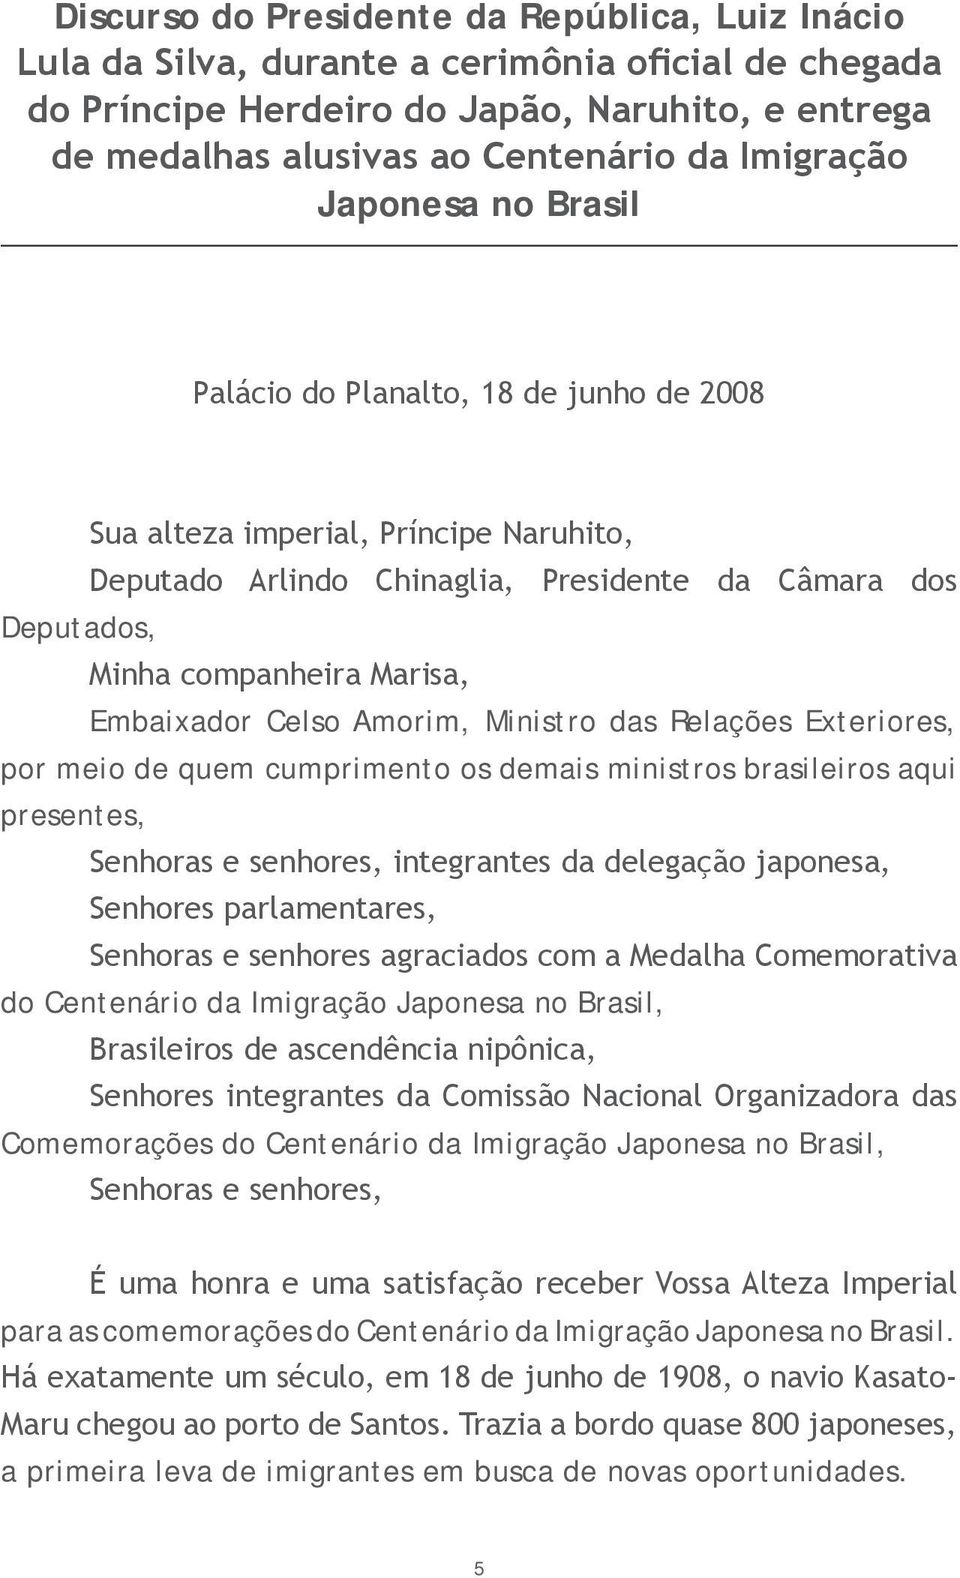 Embaixador Celso Amorim, Ministro das Relações Exteriores, por meio de quem cumprimento os demais ministros brasileiros aqui presentes, Senhoras e senhores, integrantes da delegação japonesa,